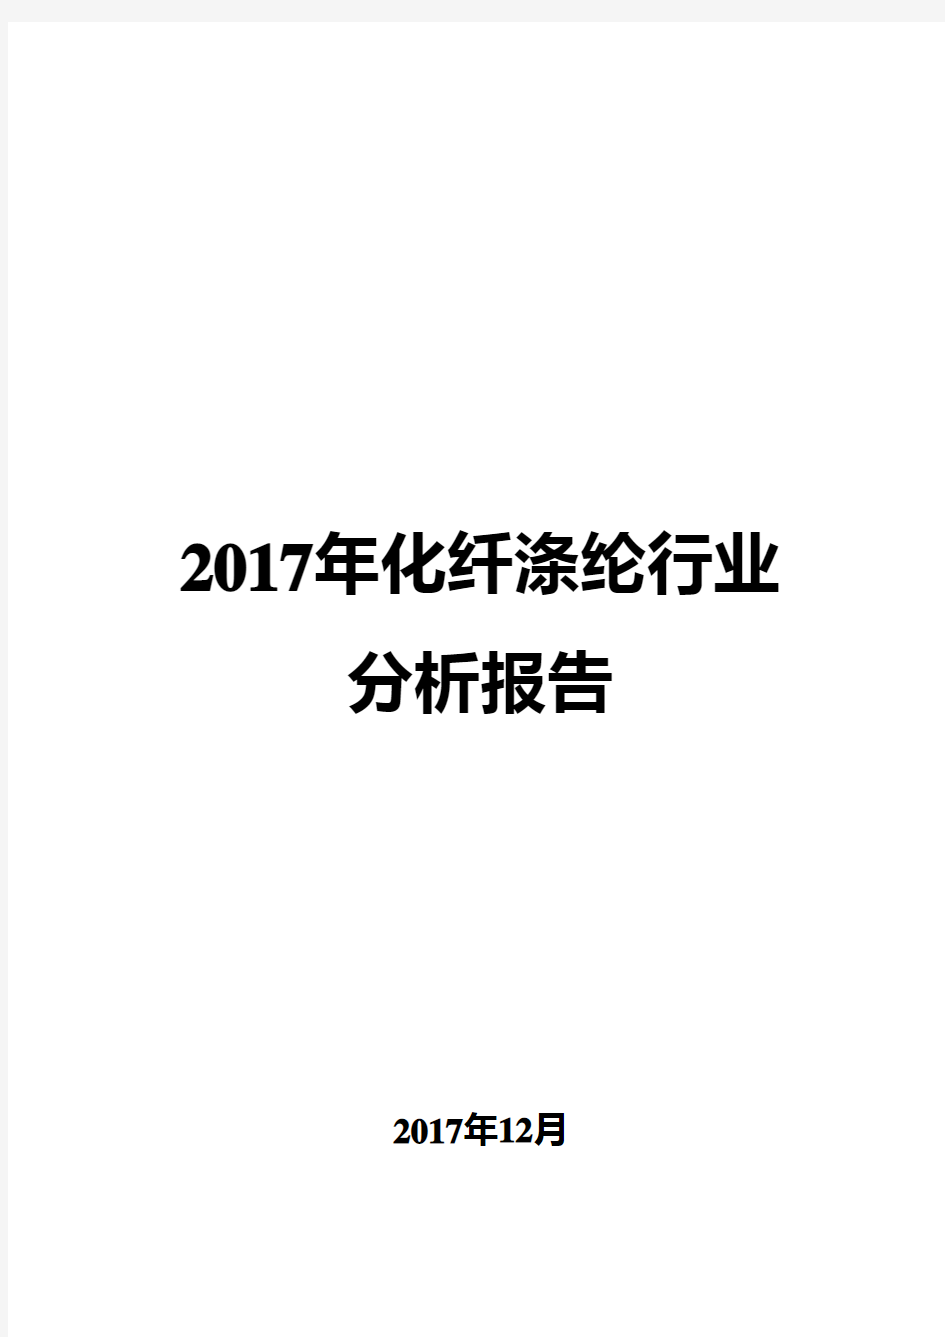 2017年化纤涤纶行业分析报告